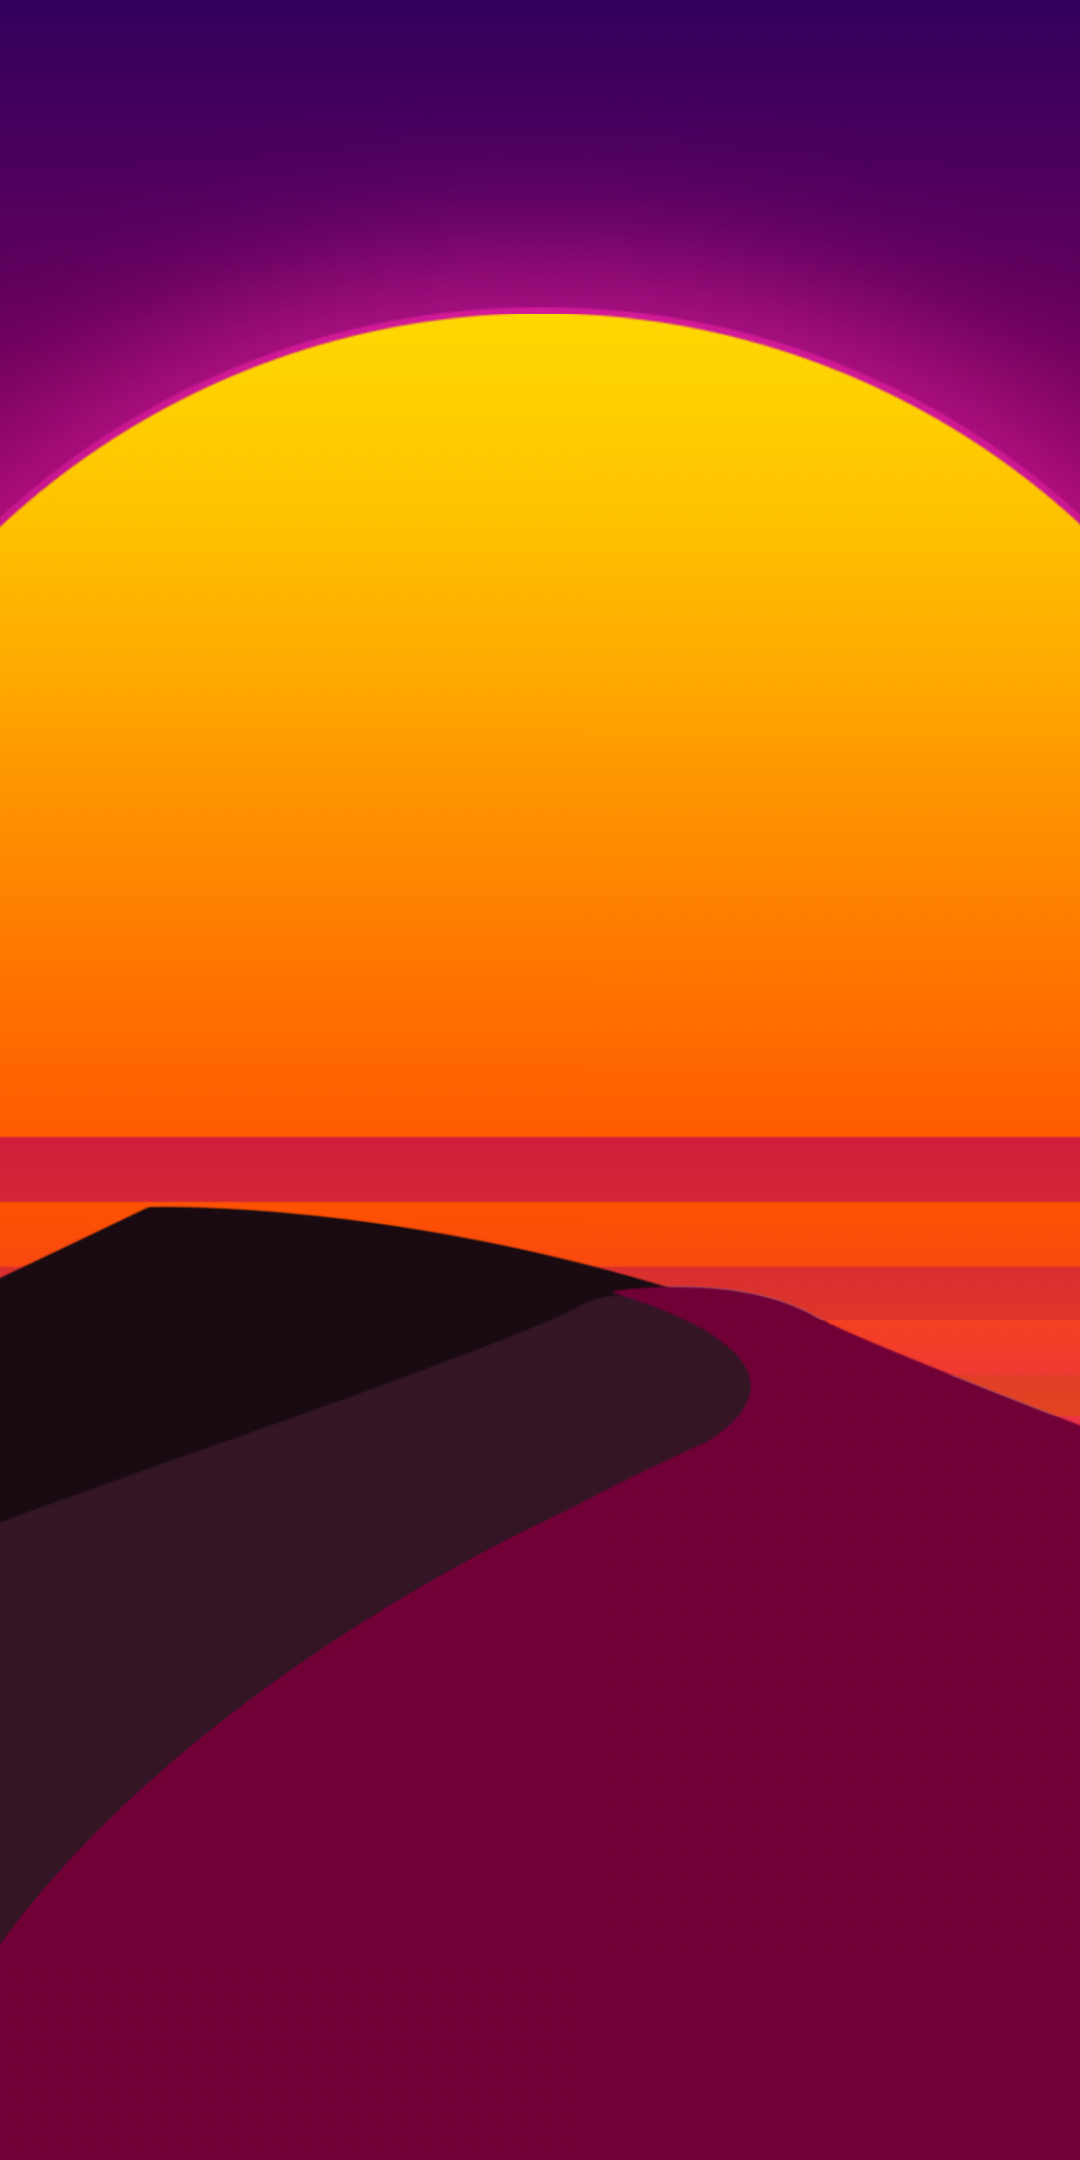 Sun, desert, dunes, abstract, artwork, 1080x2160 wallpaper